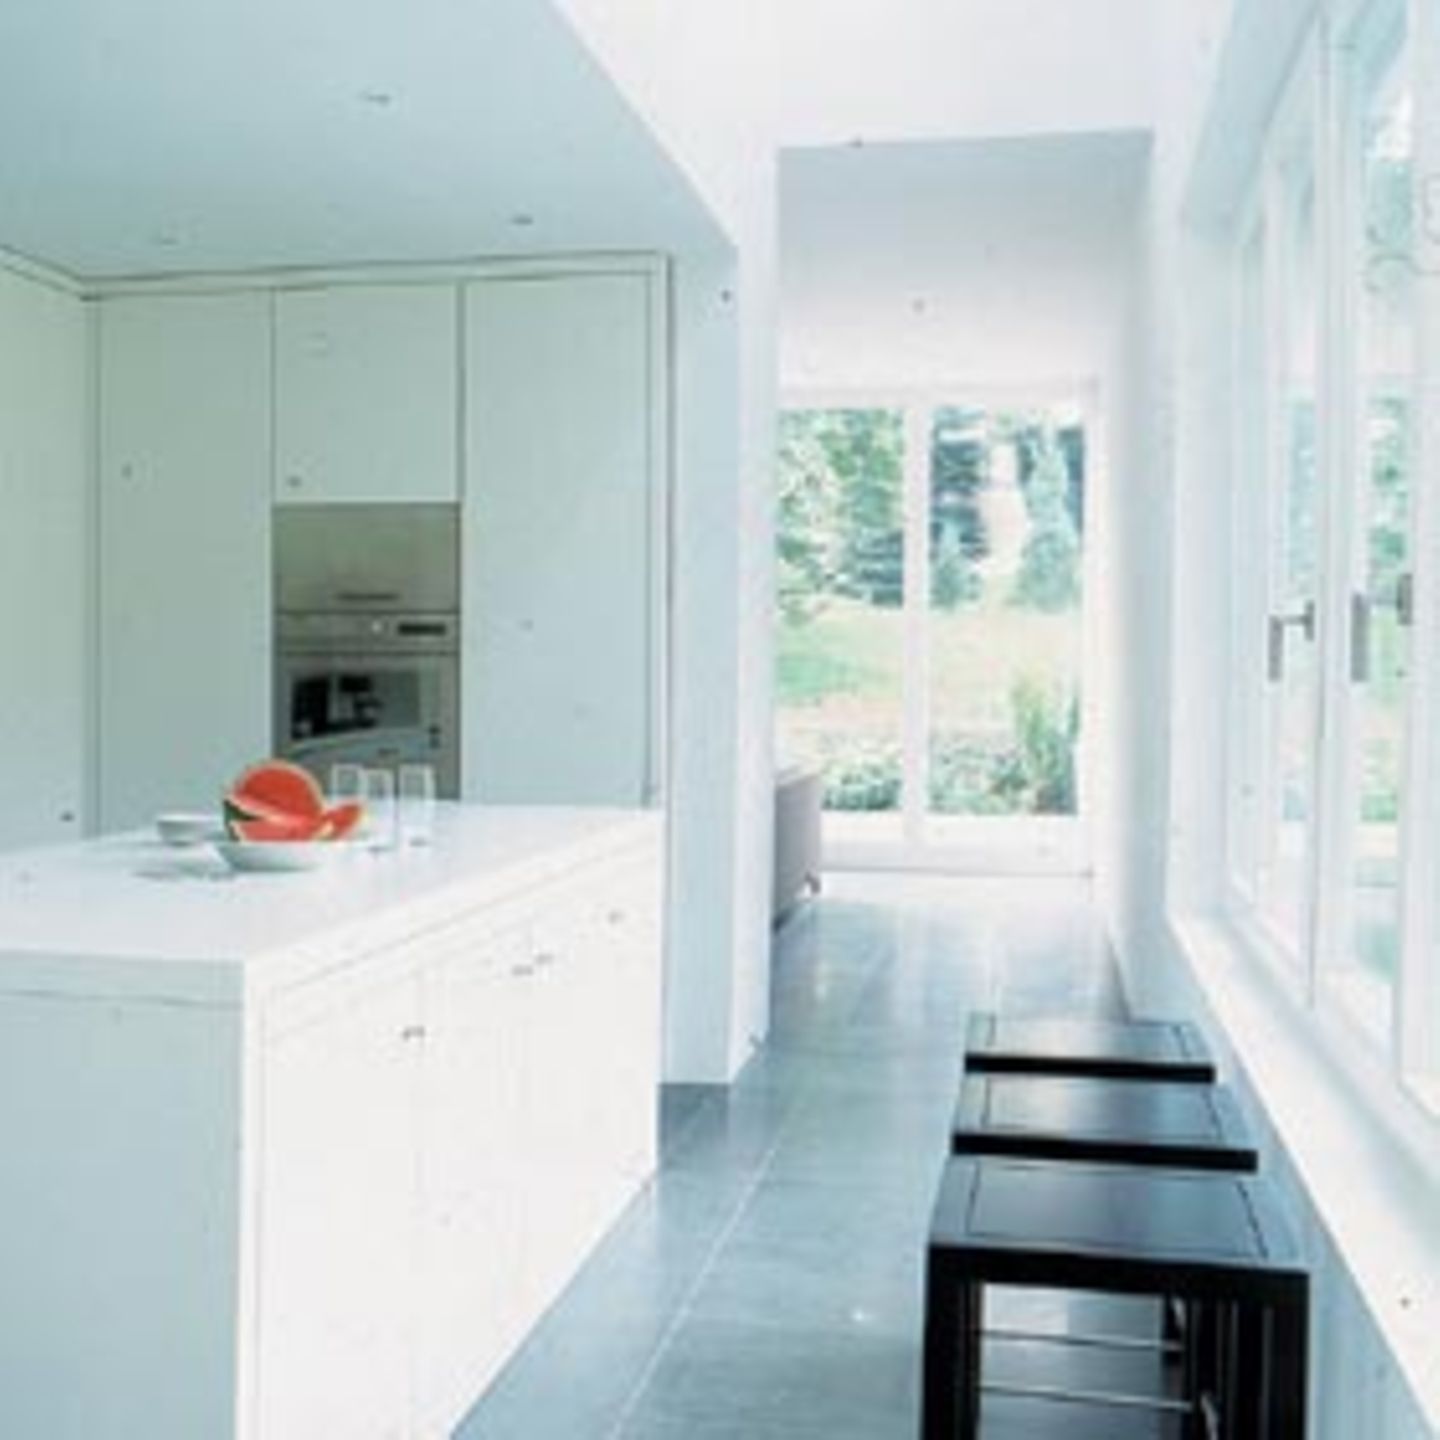 Die Bauherren legten Wert auf Einbaumöbel. Die schlichte weiße Küche liegt in einem zentralen Block zwischen Wohn- und Essbereich. Von beiden Schmalseiten des Hauses sieht man durch große Glasflächen ins Grüne.